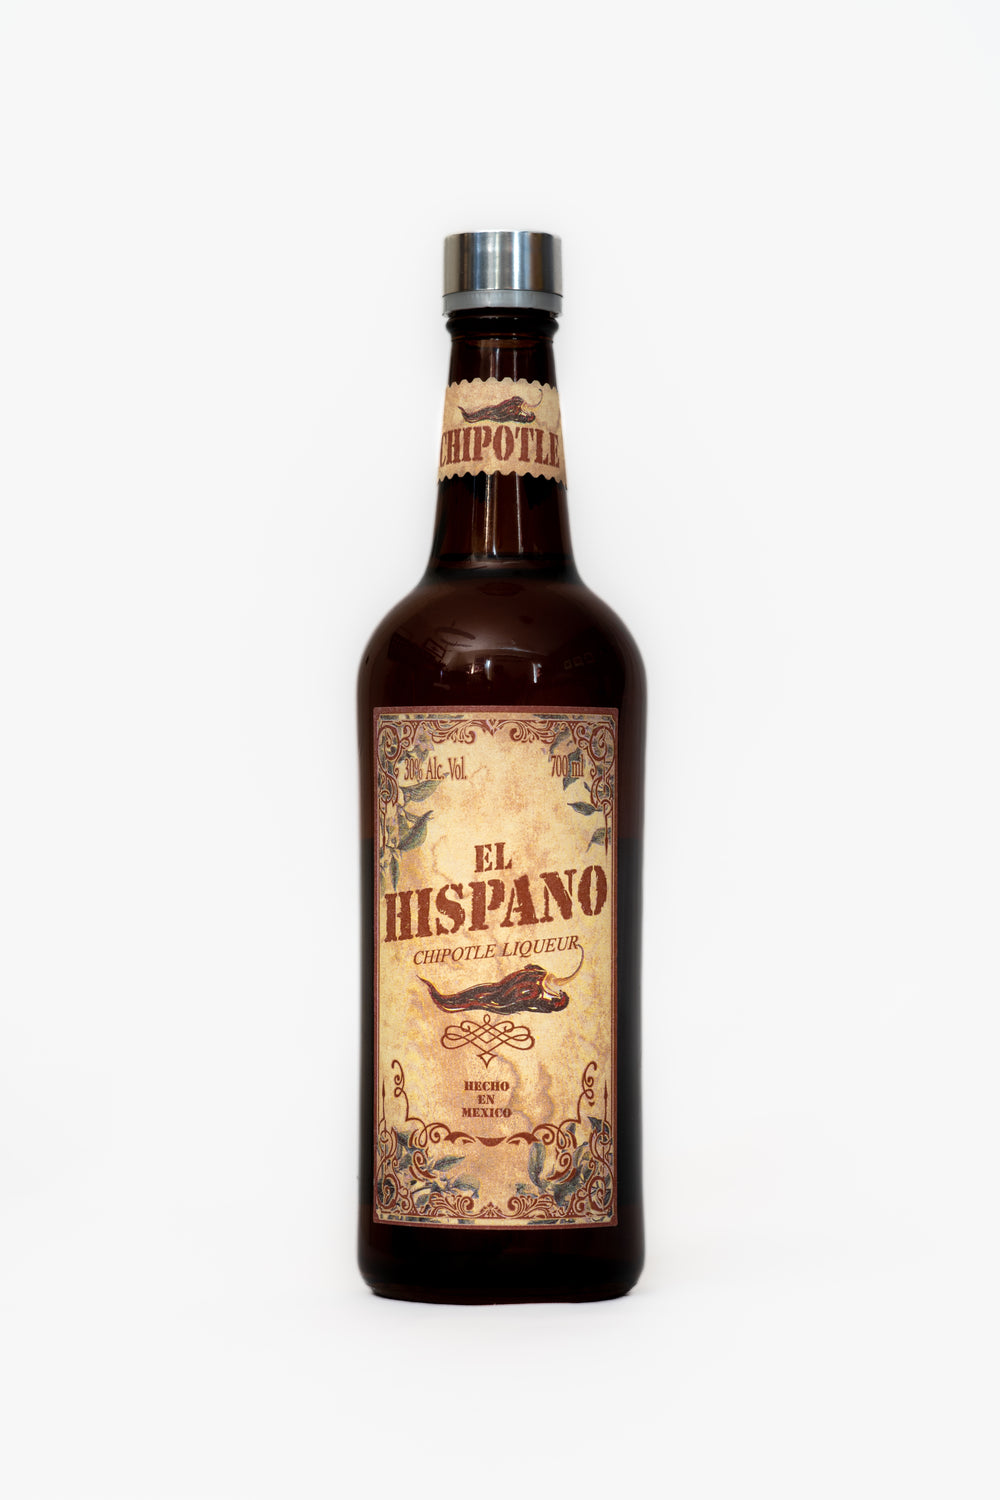 El Hispano Licor de Chile Chipotle 700 ml